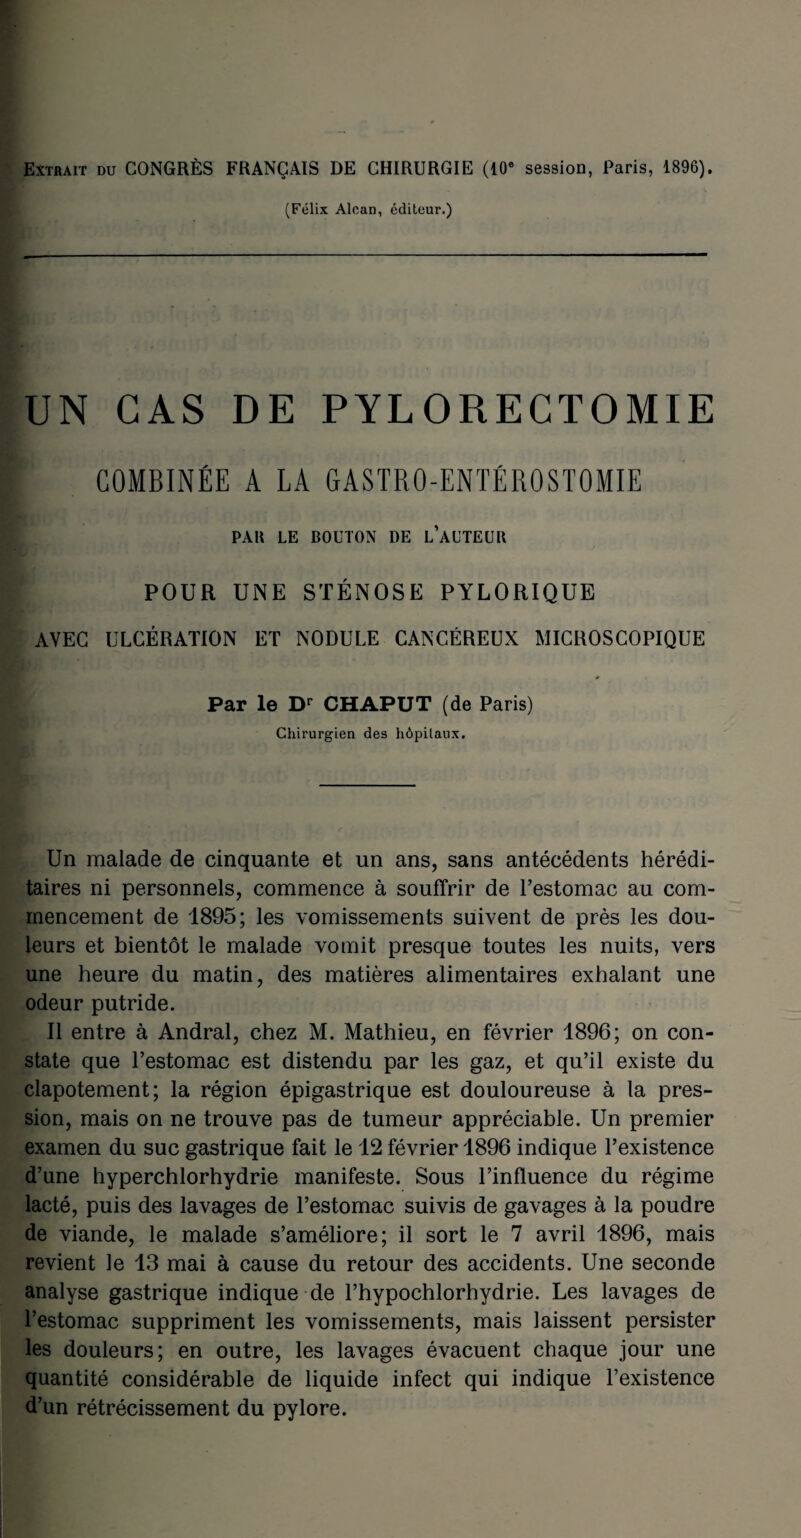 Extrait du CONGRÈS FRANÇAIS DE CHIRURGIE (10e session, Paris, 1896). (Félix Alcan, éditeur.) UN CAS DE PYLORECTOMIE COMBINÉE A LA GASTRO-ENTÉROSTOMIE PAR LE BOUTON DE L’AUTEUR POUR UNE STÉNOSE PYLORIQUE AVEC ULCÉRATION ET NODULE CANCÉREUX MICROSCOPIQUE Par le Dr CHAPUT (de Paris) Chirurgien des hôpitaux. Un malade de cinquante et un ans, sans antécédents hérédi¬ taires ni personnels, commence à souffrir de l’estomac au com¬ mencement de 1895; les vomissements suivent de près les dou¬ leurs et bientôt le malade vomit presque toutes les nuits, vers une heure du matin, des matières alimentaires exhalant une odeur putride. Il entre à Andral, chez M. Mathieu, en février 1896; on con¬ state que l’estomac est distendu par les gaz, et qu’il existe du clapotement; la région épigastrique est douloureuse à la pres¬ sion, mais on ne trouve pas de tumeur appréciable. Un premier examen du suc gastrique fait le 12 février 1896 indique l’existence d’une hyperchlorhydrie manifeste. Sous l’influence du régime lacté, puis des lavages de l’estomac suivis de gavages à la poudre de viande, le malade s’améliore; il sort le 7 avril 1896, mais revient le 13 mai à cause du retour des accidents. Une seconde analyse gastrique indique de l’hypochlorhydrie. Les lavages de l’estomac suppriment les vomissements, mais laissent persister les douleurs; en outre, les lavages évacuent chaque jour une quantité considérable de liquide infect qui indique l’existence d’un rétrécissement du pylore.